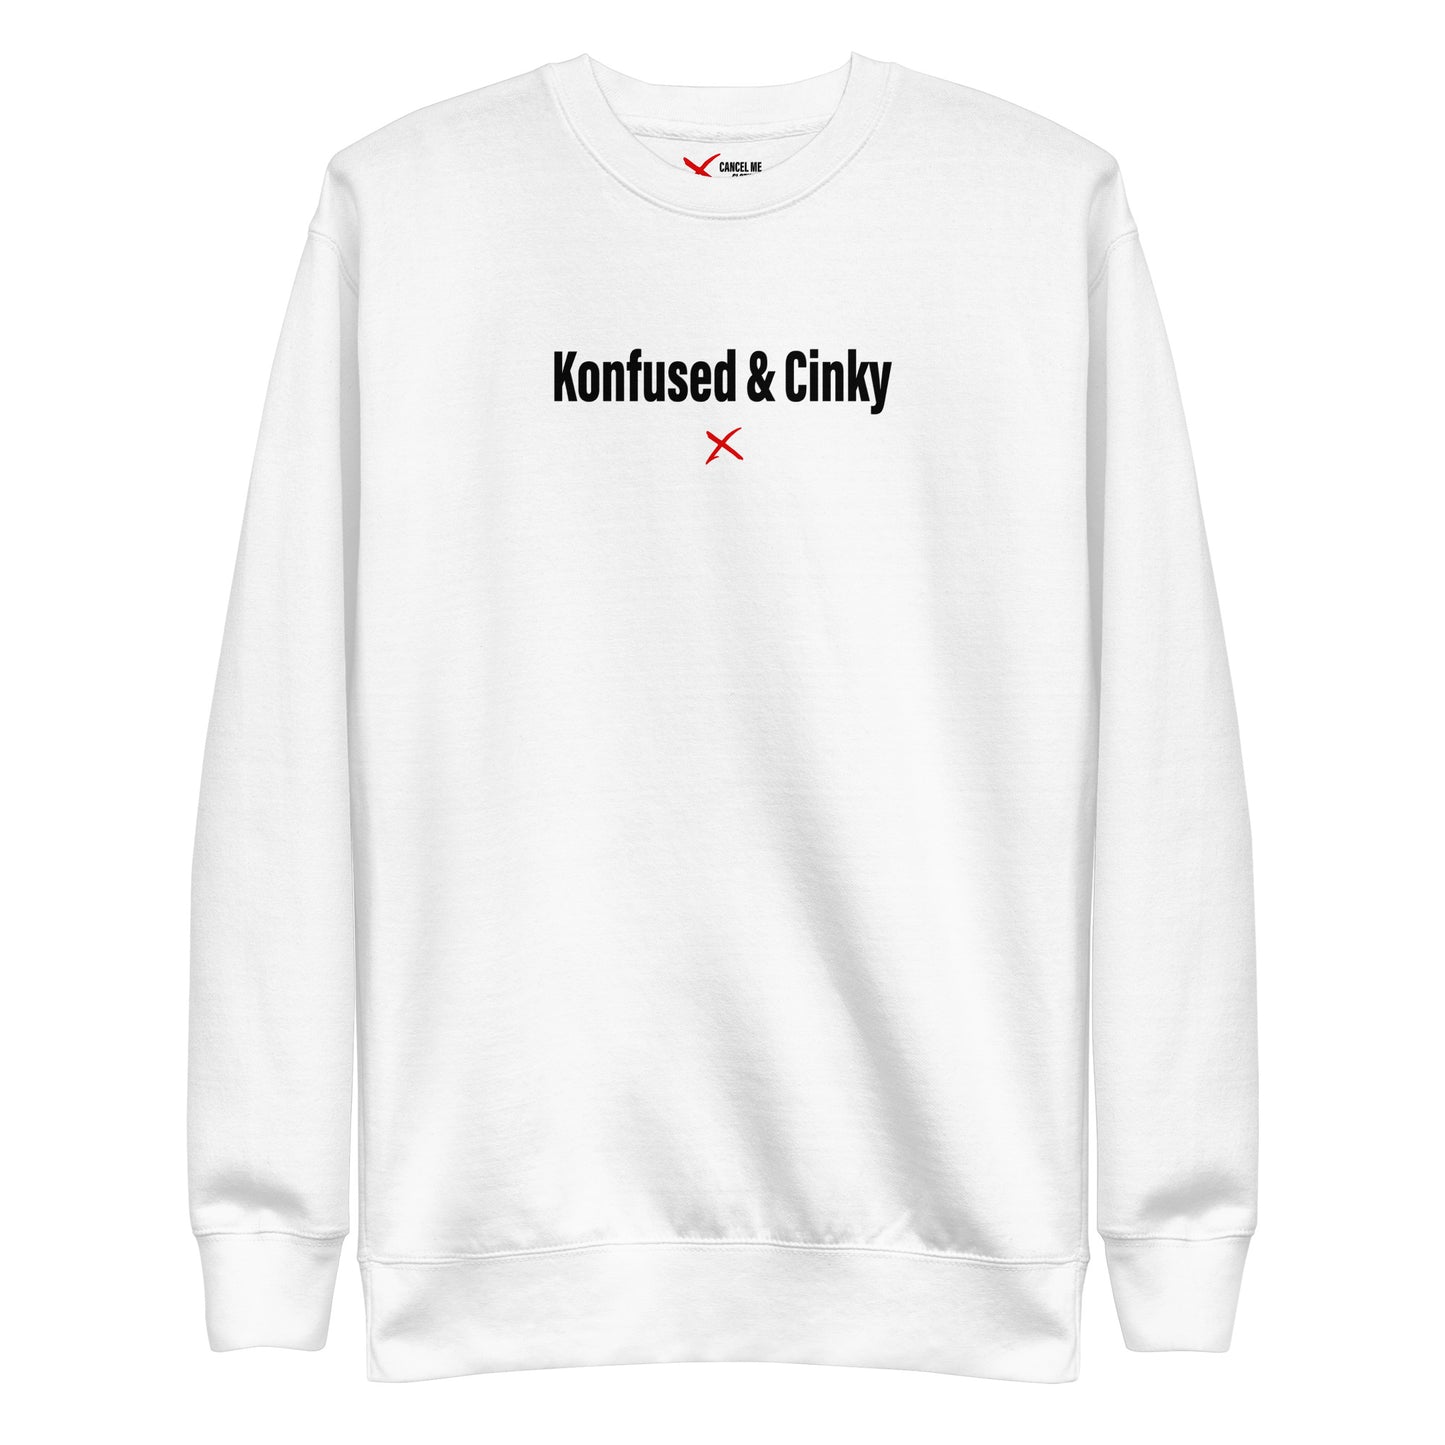 Konfused & Cinky - Sweatshirt